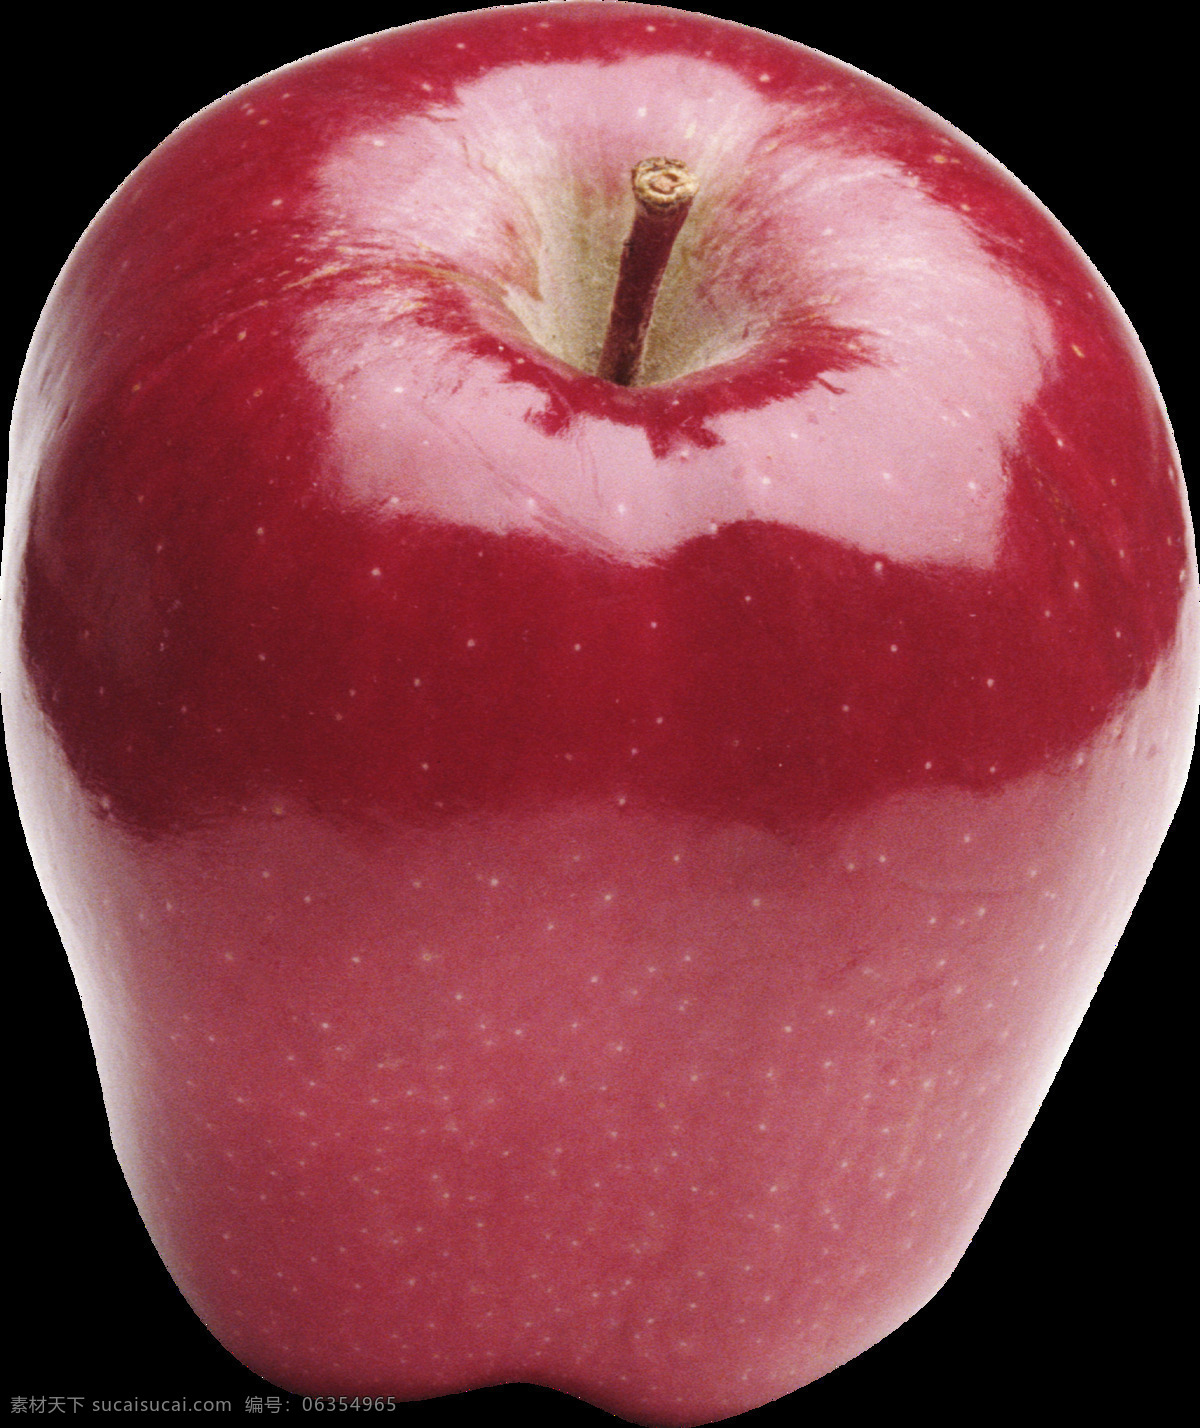 真实 红 蛇果 苹果 免 抠 透明 图 层 青苹果 苹果卡通图片 苹果logo 苹果简笔画 壁纸高清 大苹果 红苹果 苹果梨树 苹果商标 金毛苹果 青苹果榨汁